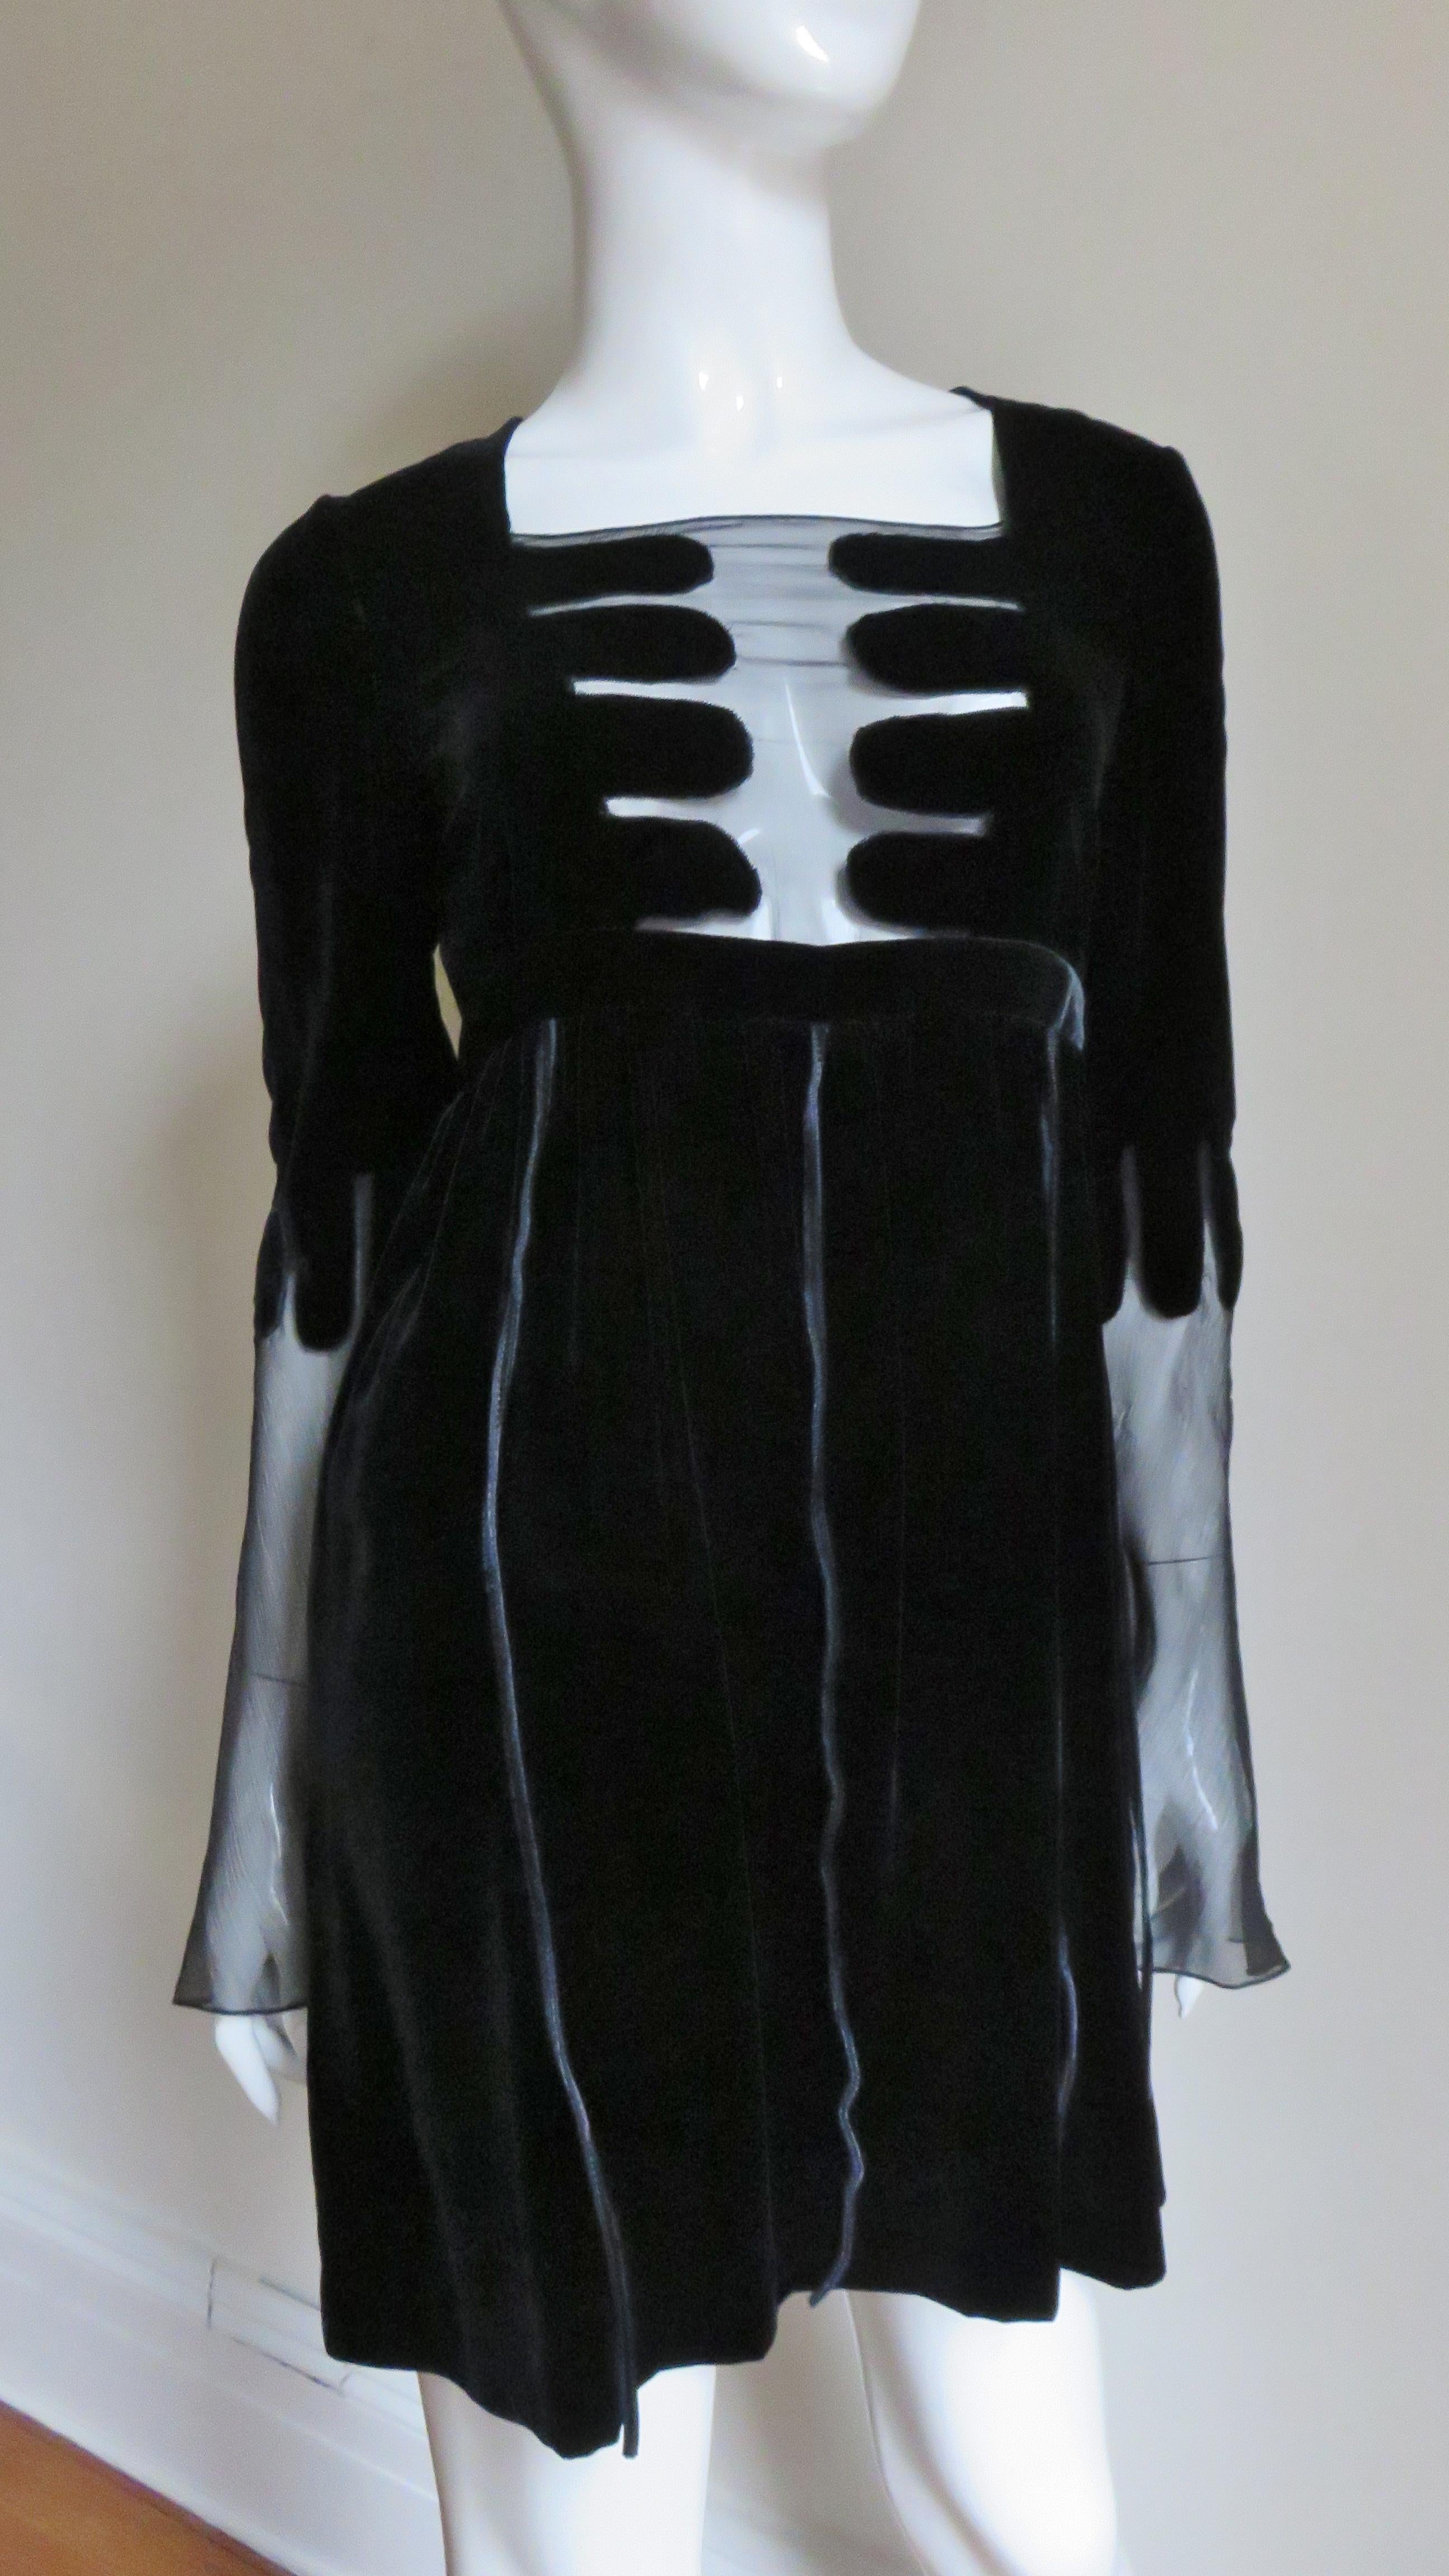 Une magnifique robe en velours de soie noire de Gucci, portée lors d'une campagne publicitaire en 2001. Elle présente une encolure carrée, le centre du buste étant souligné par des zones transparentes qui contrastent avec le riche velours, créant